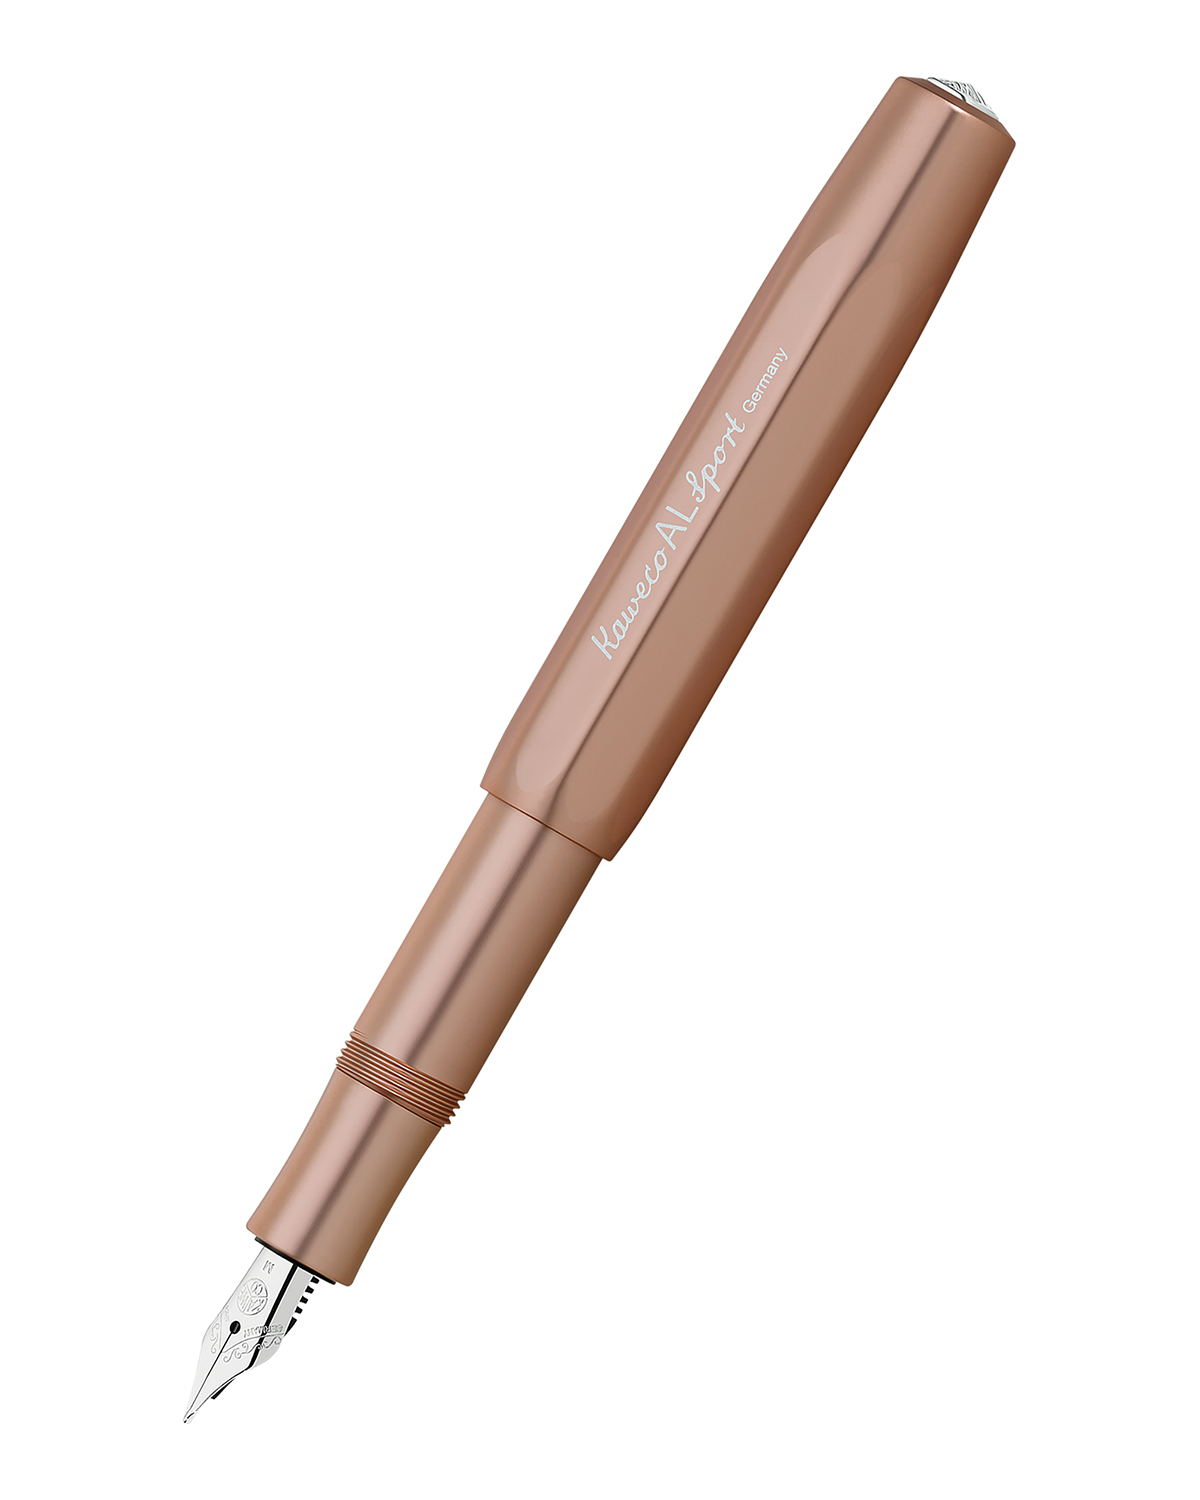 Перьевая ручка Kaweco AL Sport цвет: розовое золото синие чернила EF 05 мм